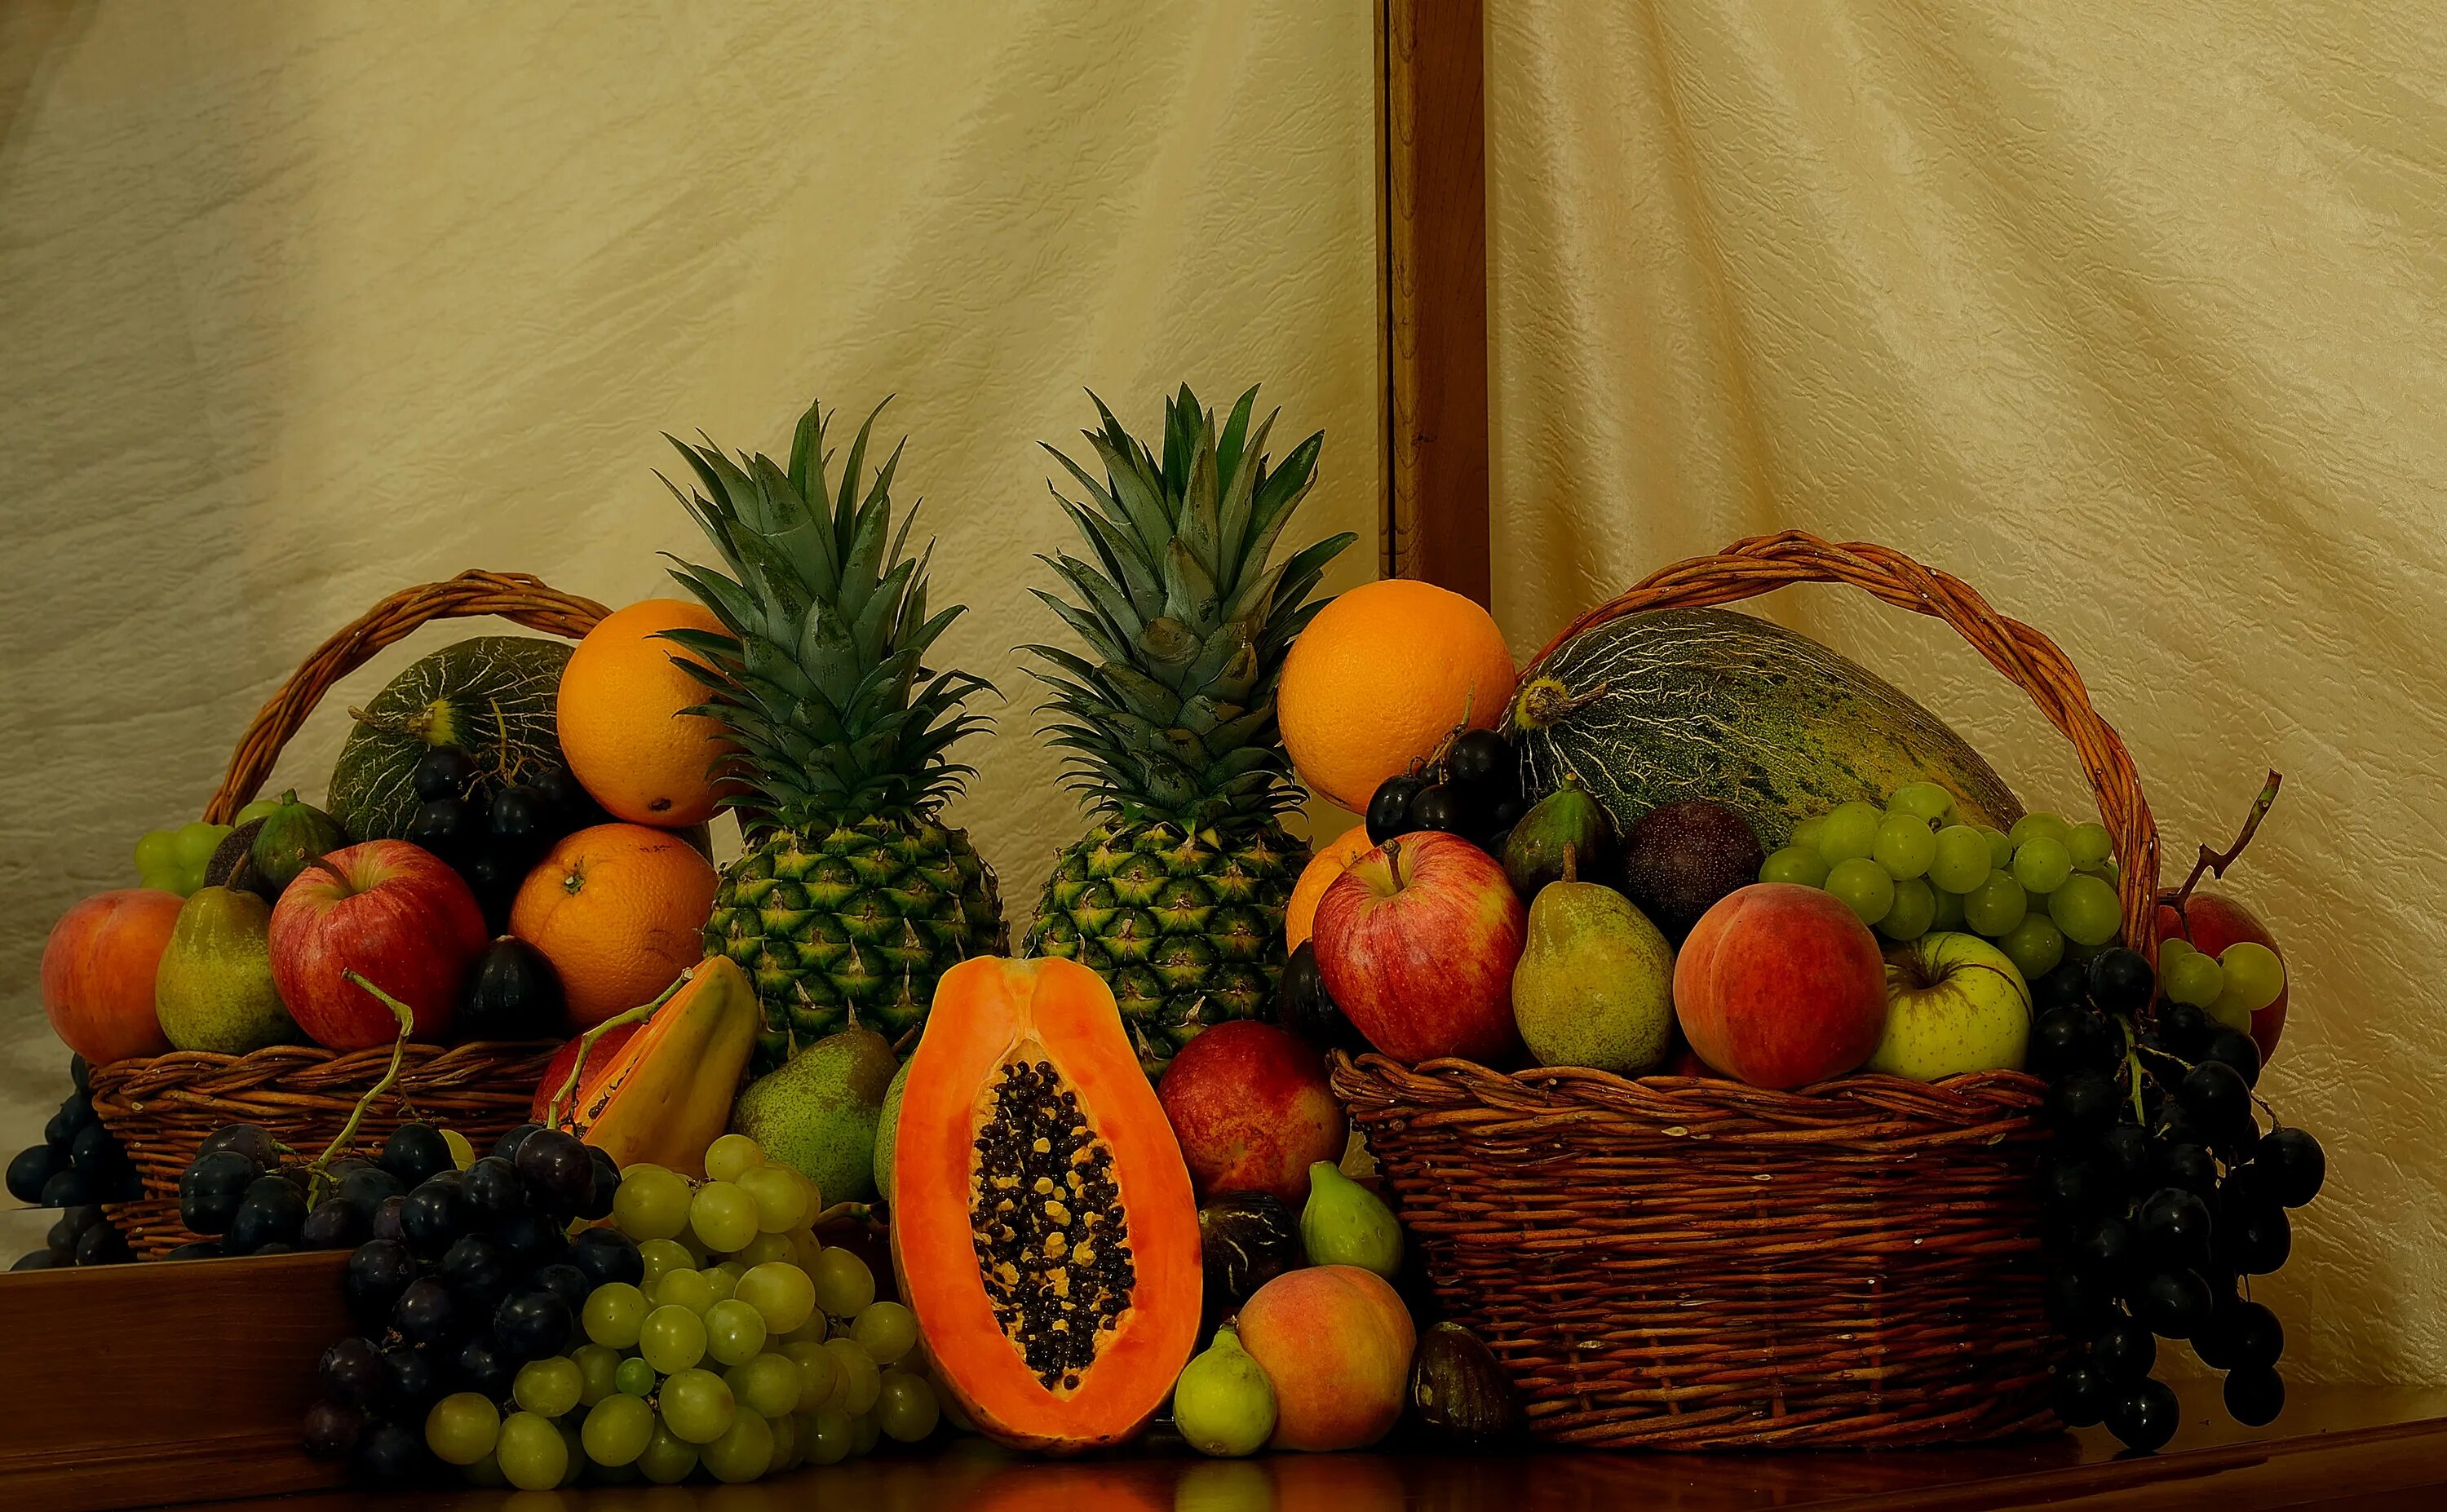 Фрукты. Фрукты на столе. Корзина с овощами и фруктами. Корзина фруктов на столе. 2 6 всех фруктов составляют персики